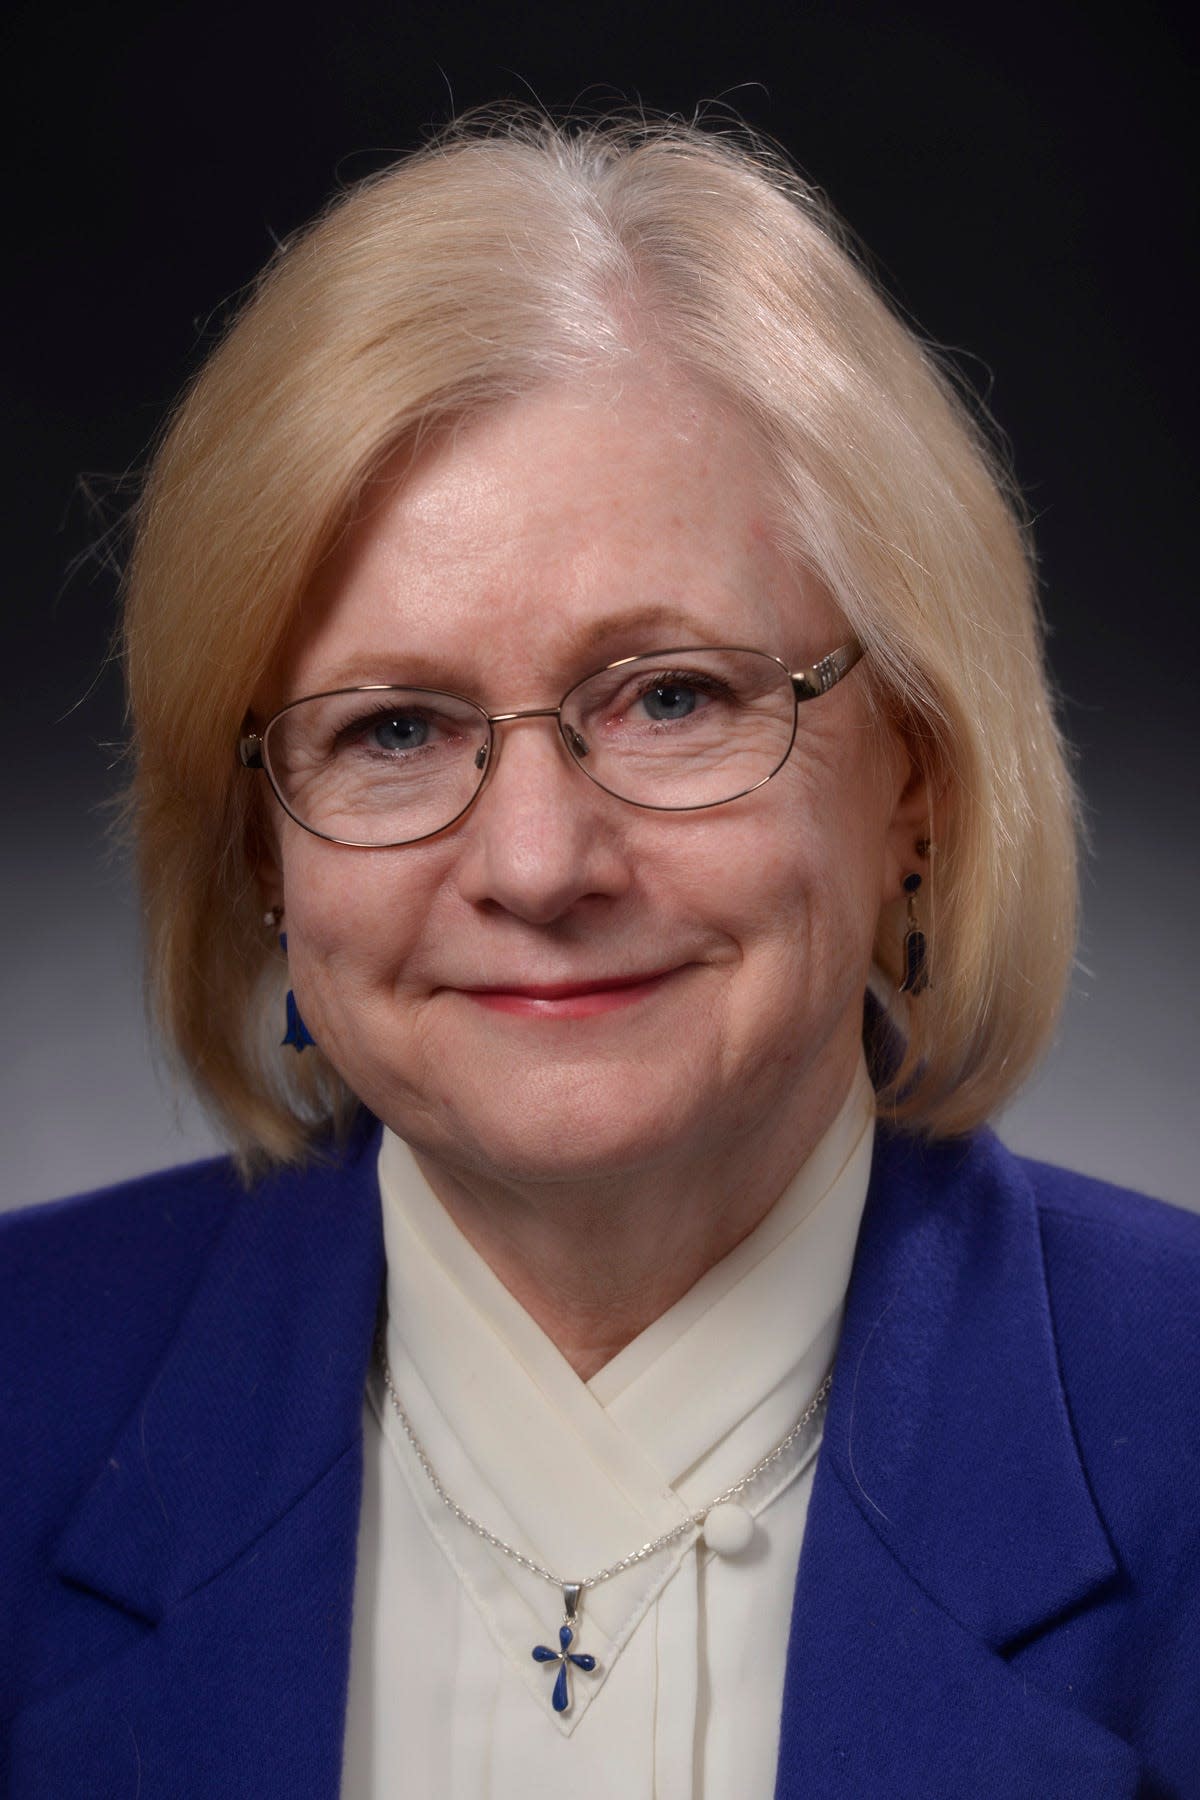 Phyllis Van Buren, Times Writers Group member, photographed Nov. 4, 2015.